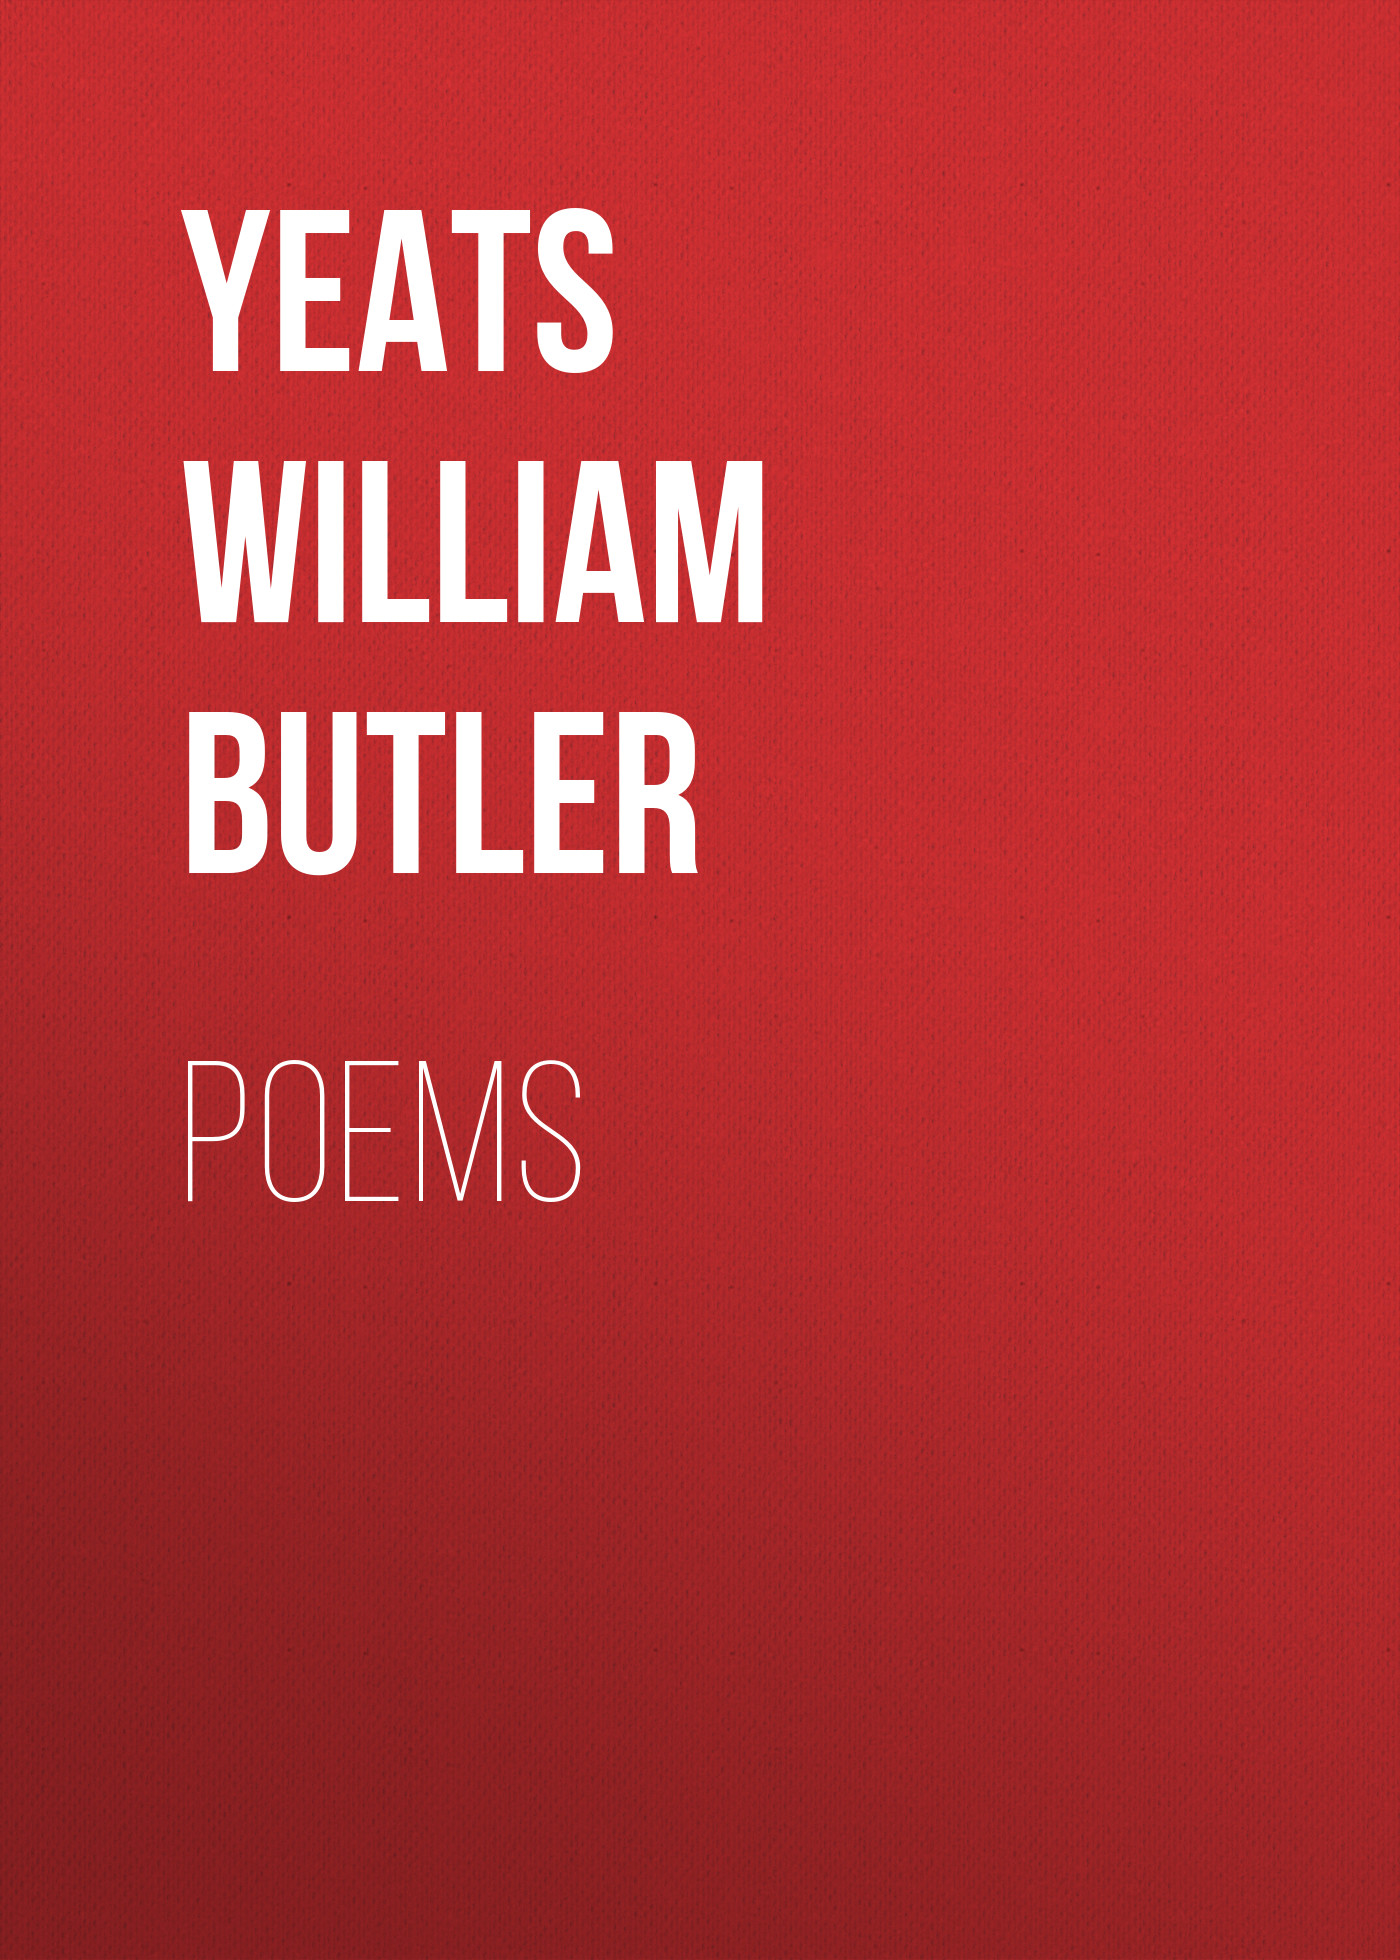 Книга Poems из серии , созданная William Yeats, может относится к жанру Поэзия, Зарубежная классика, Зарубежные стихи. Стоимость электронной книги Poems с идентификатором 23161707 составляет 0 руб.